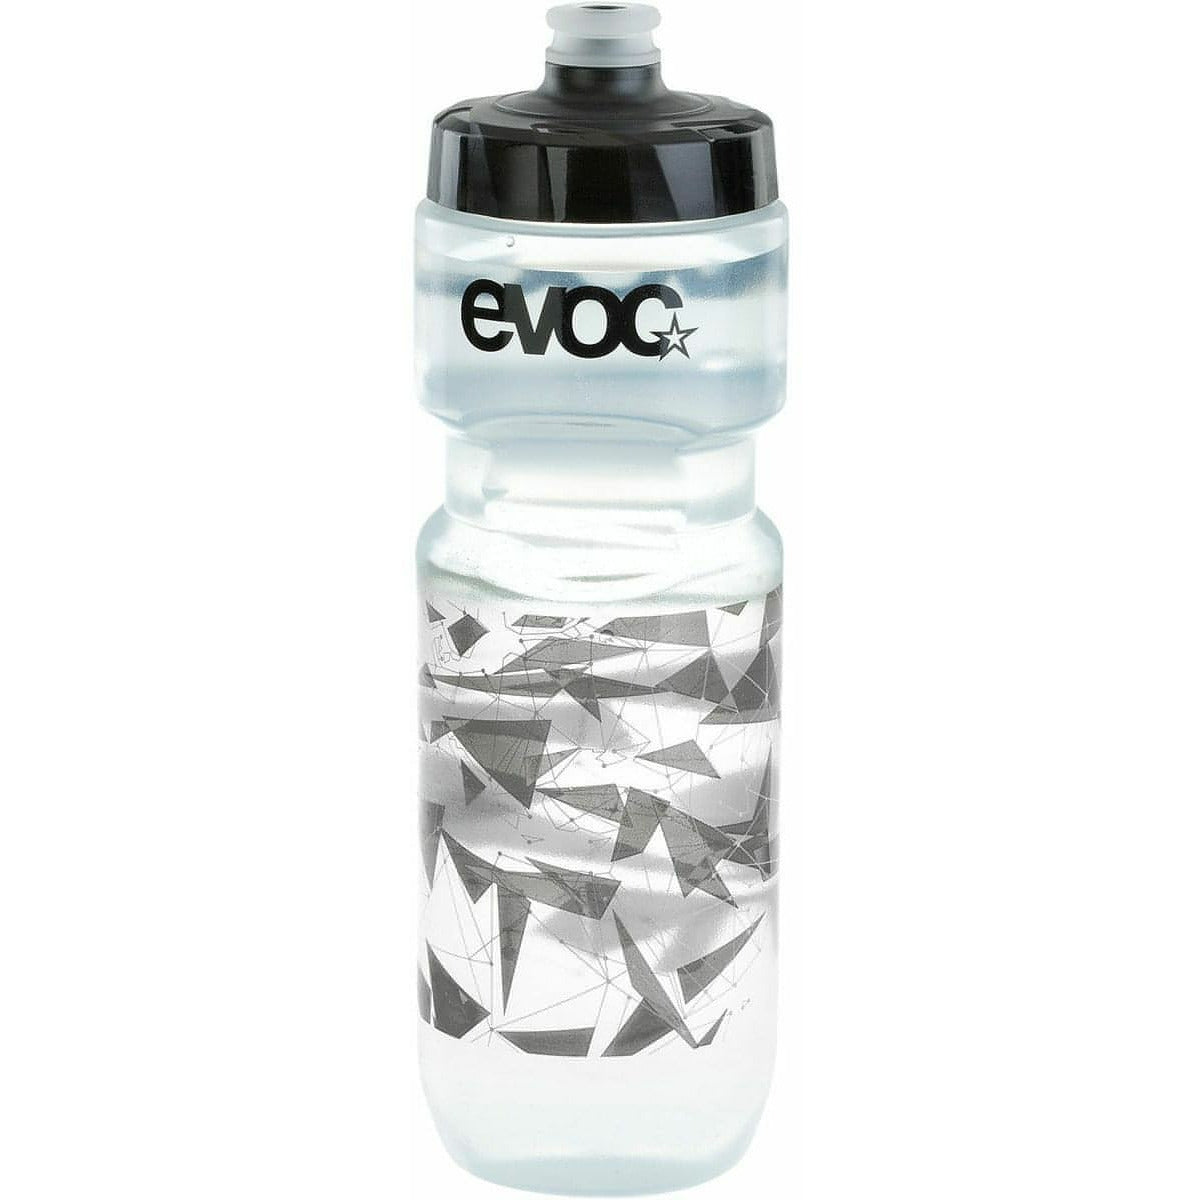 Evoc 750ml Water Bottle - White 4250450726340 - Start Fitness